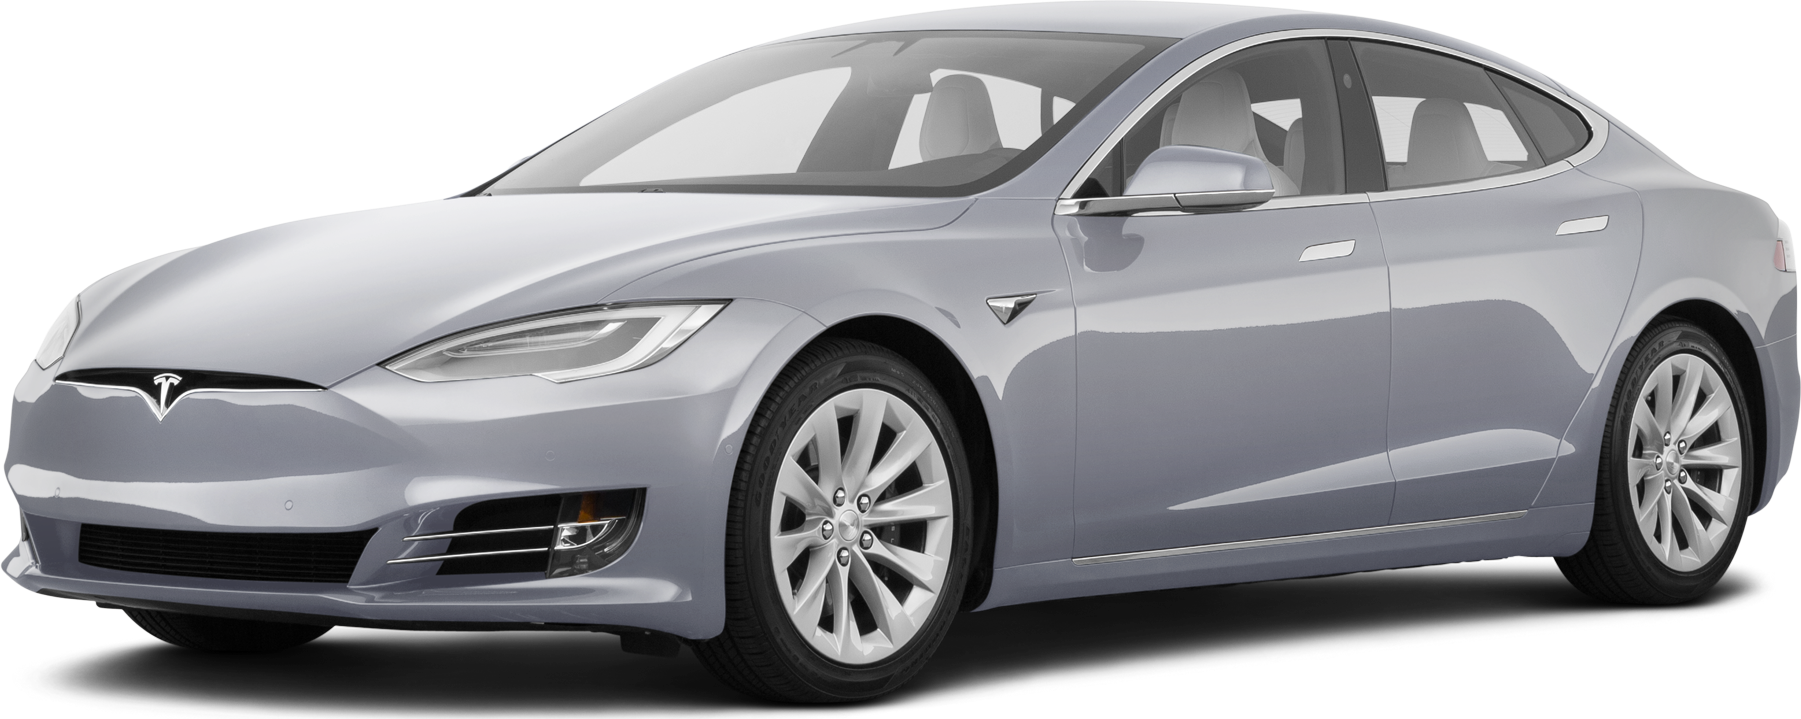 Leerling kaas Station Used 2017 Tesla Model S 100D Sedan 4D Prices | Kelley Blue Book